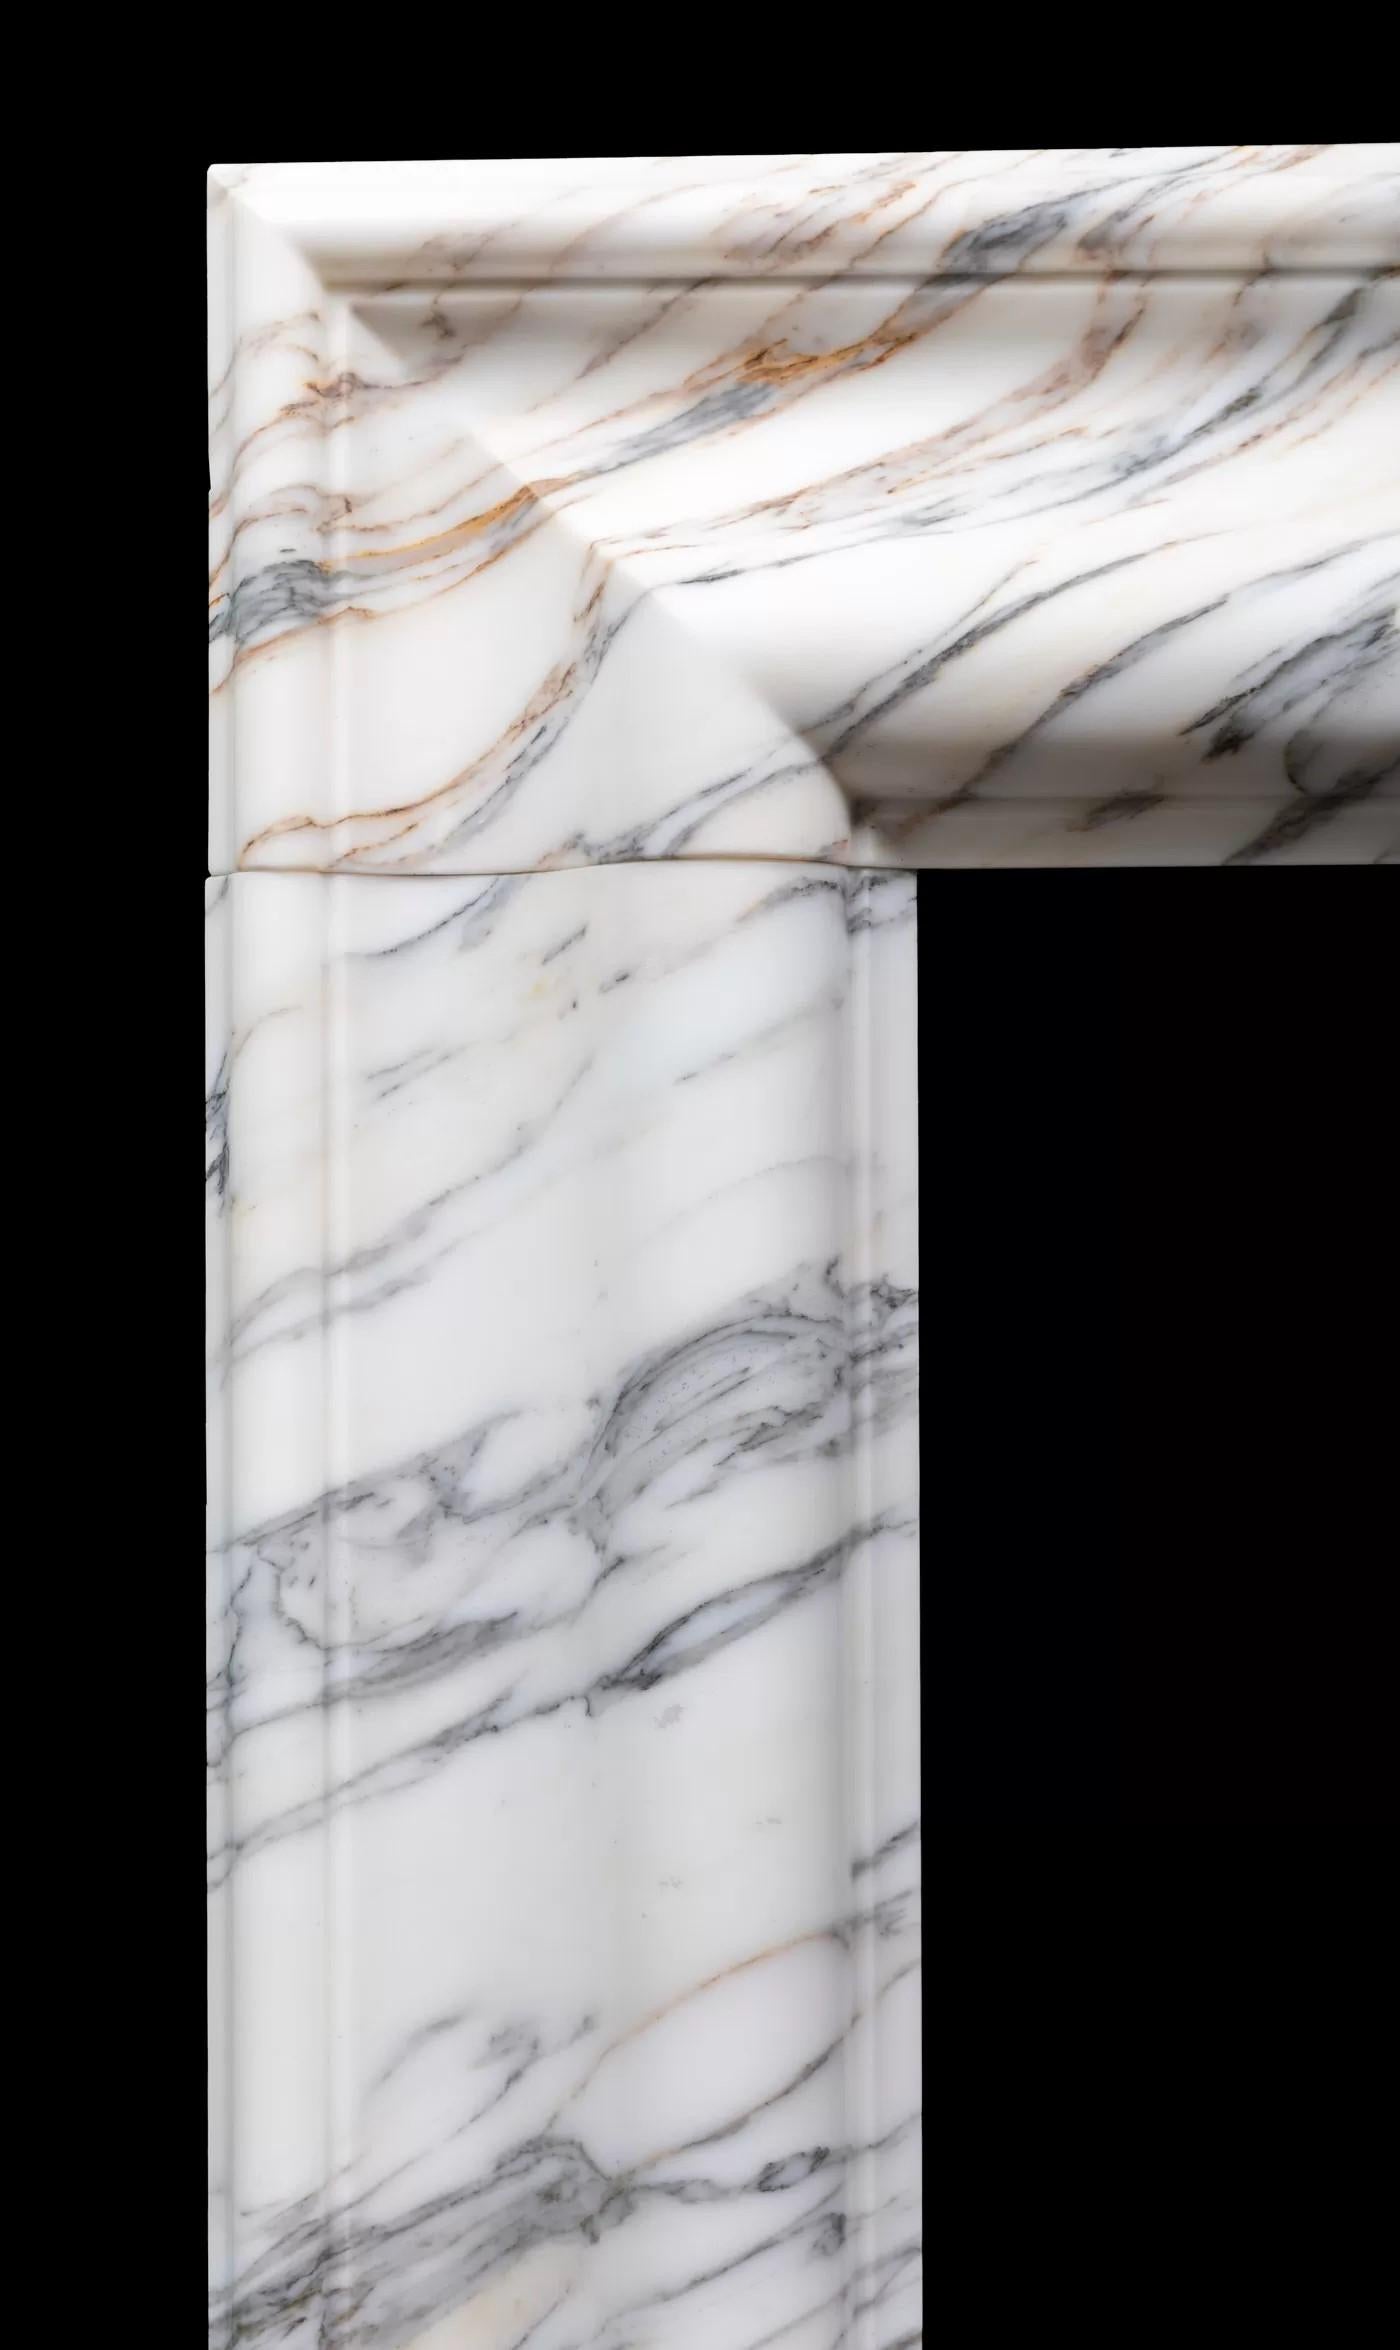 Cheminée de taille moyenne de style bolection, réalisée en marbre italien Arabescato par Ryan and Smith.

Une cheminée classique de style bolection avec un cadre délicatement moulé sur des plinthes carrées unies, taillée dans des morceaux